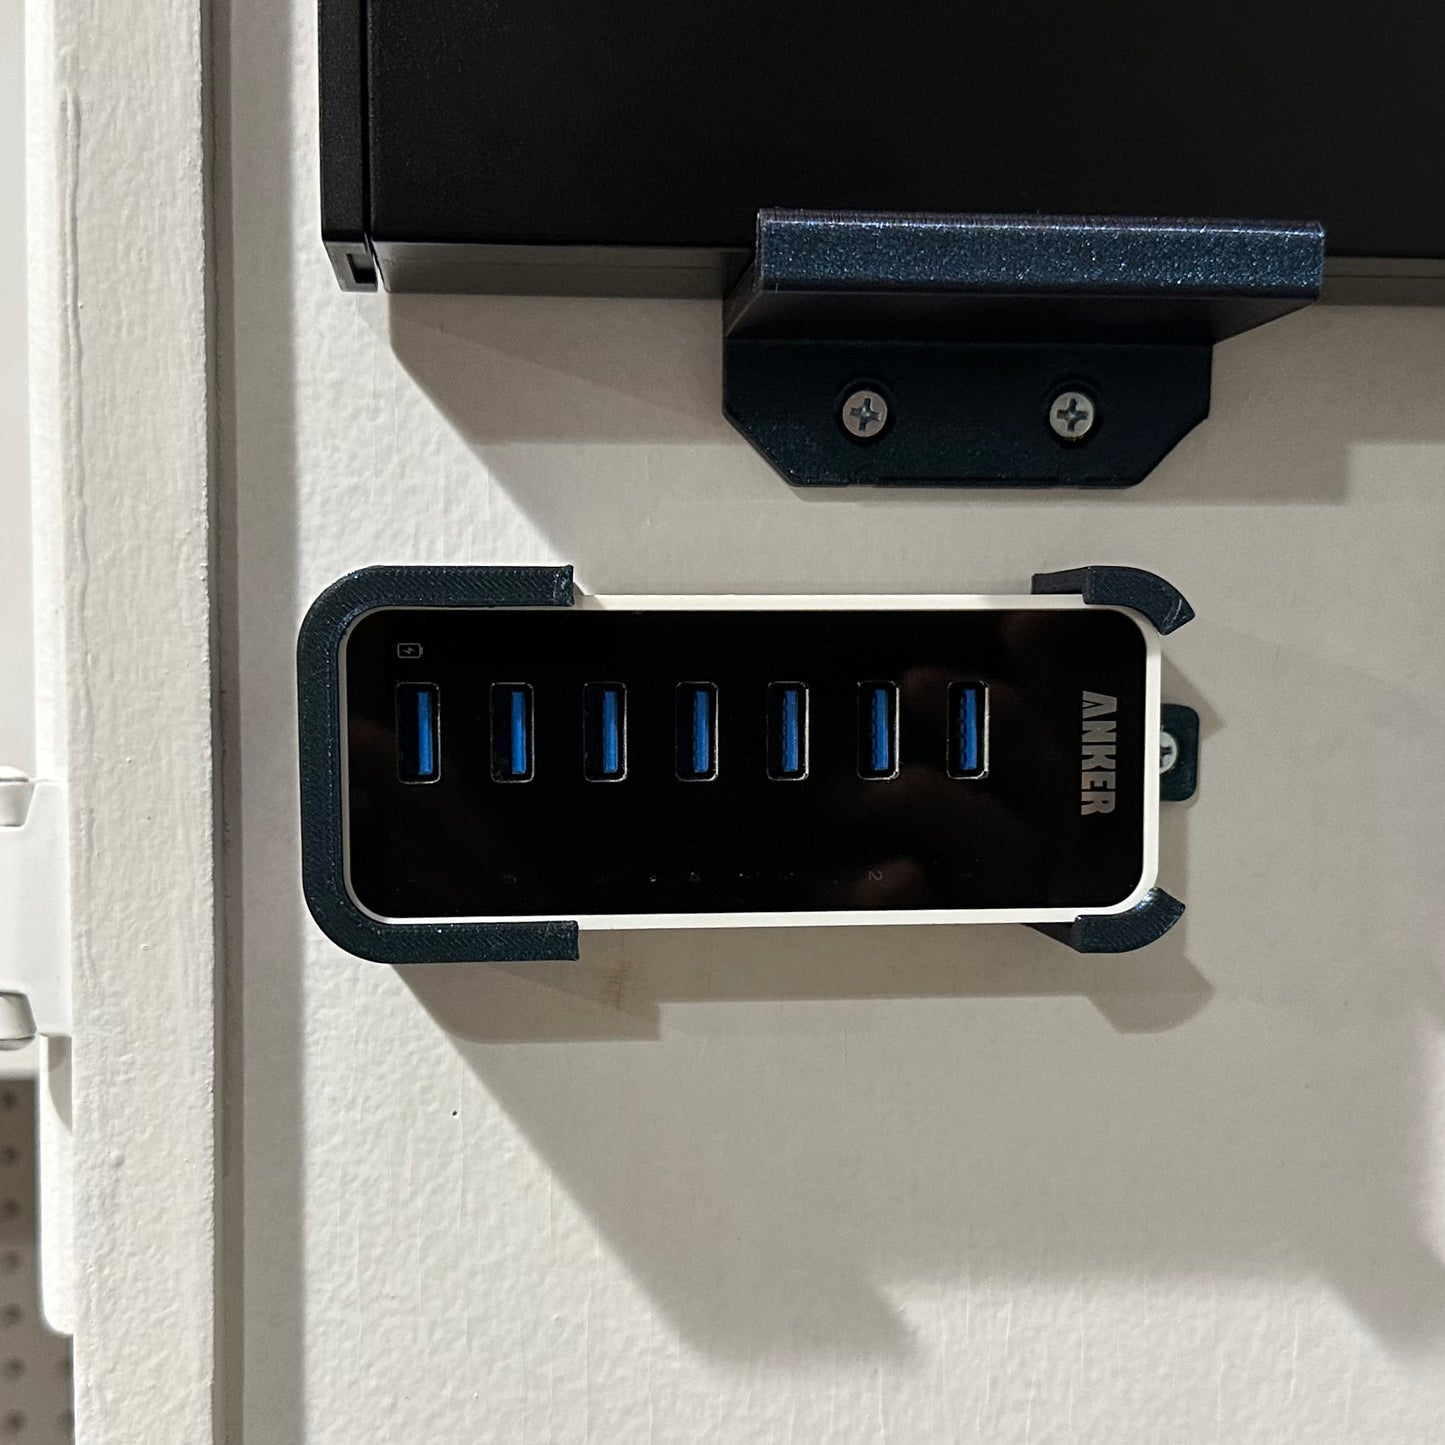 Wall / Desk Mount for Anker 7 or 10 port USB Data Hub